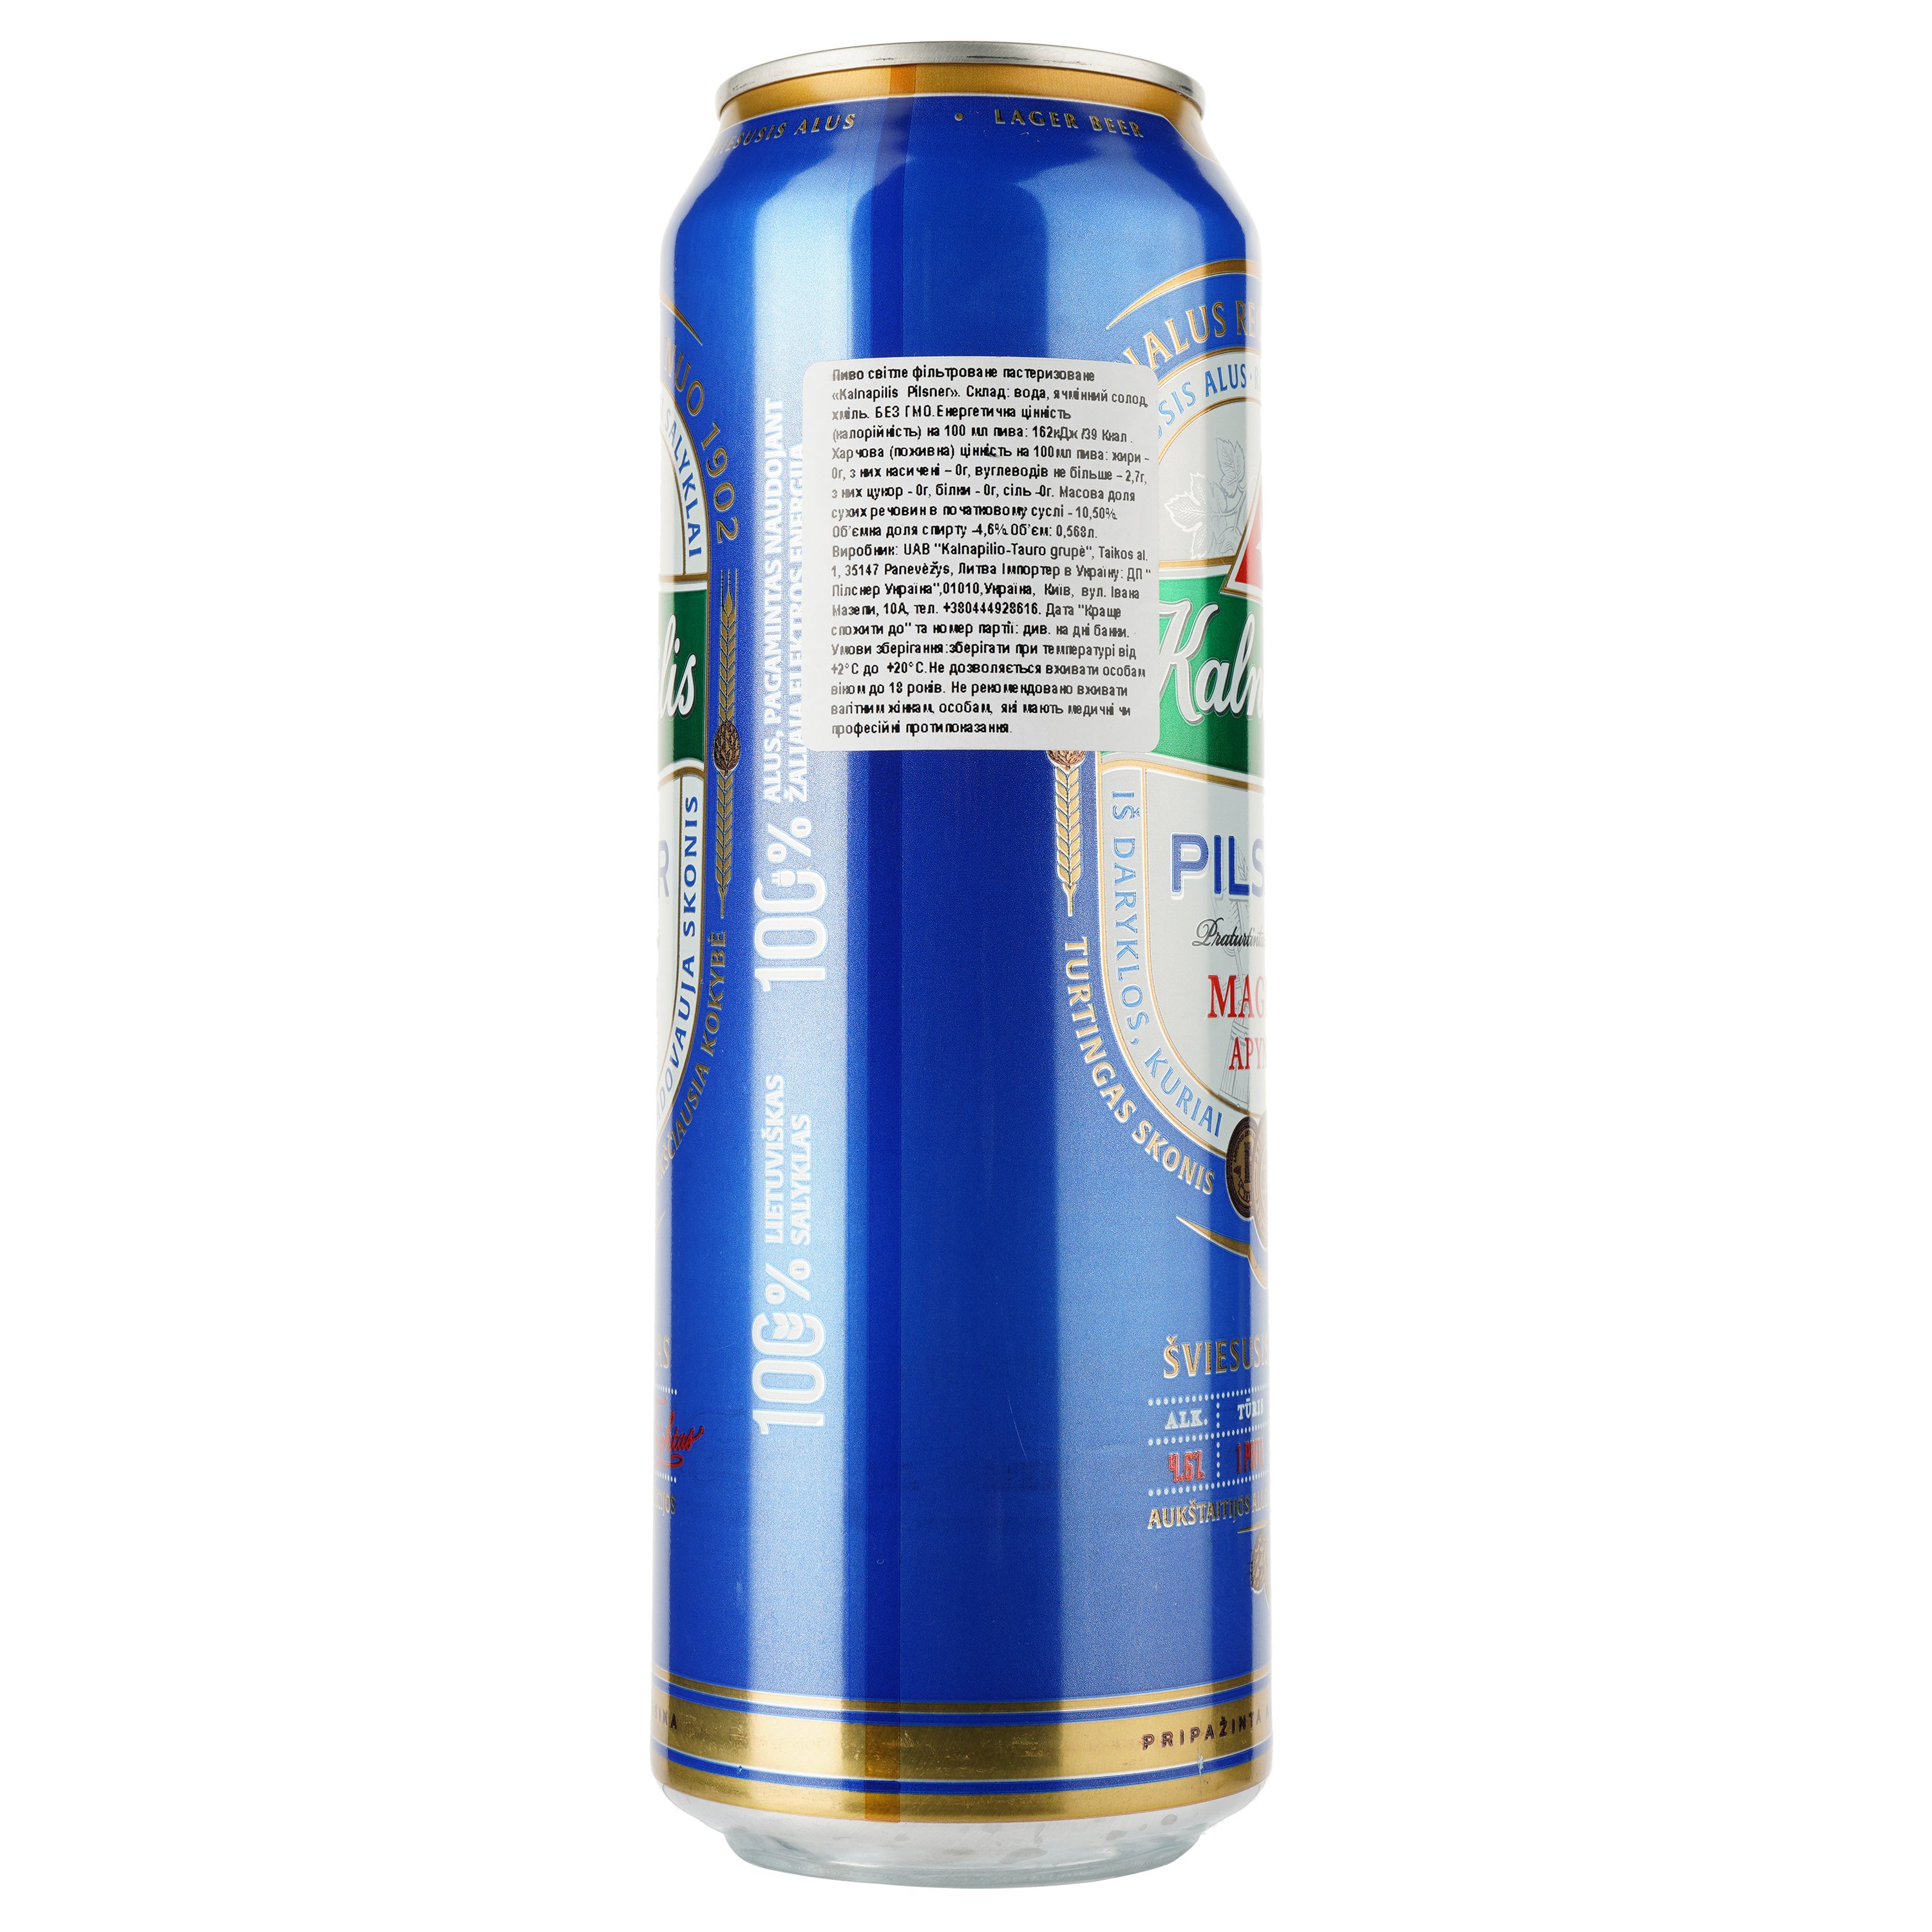 Пиво Kalnapilis Pilsner, світле, фільтроване, 4,6%, з/б, 0,568 л - фото 2